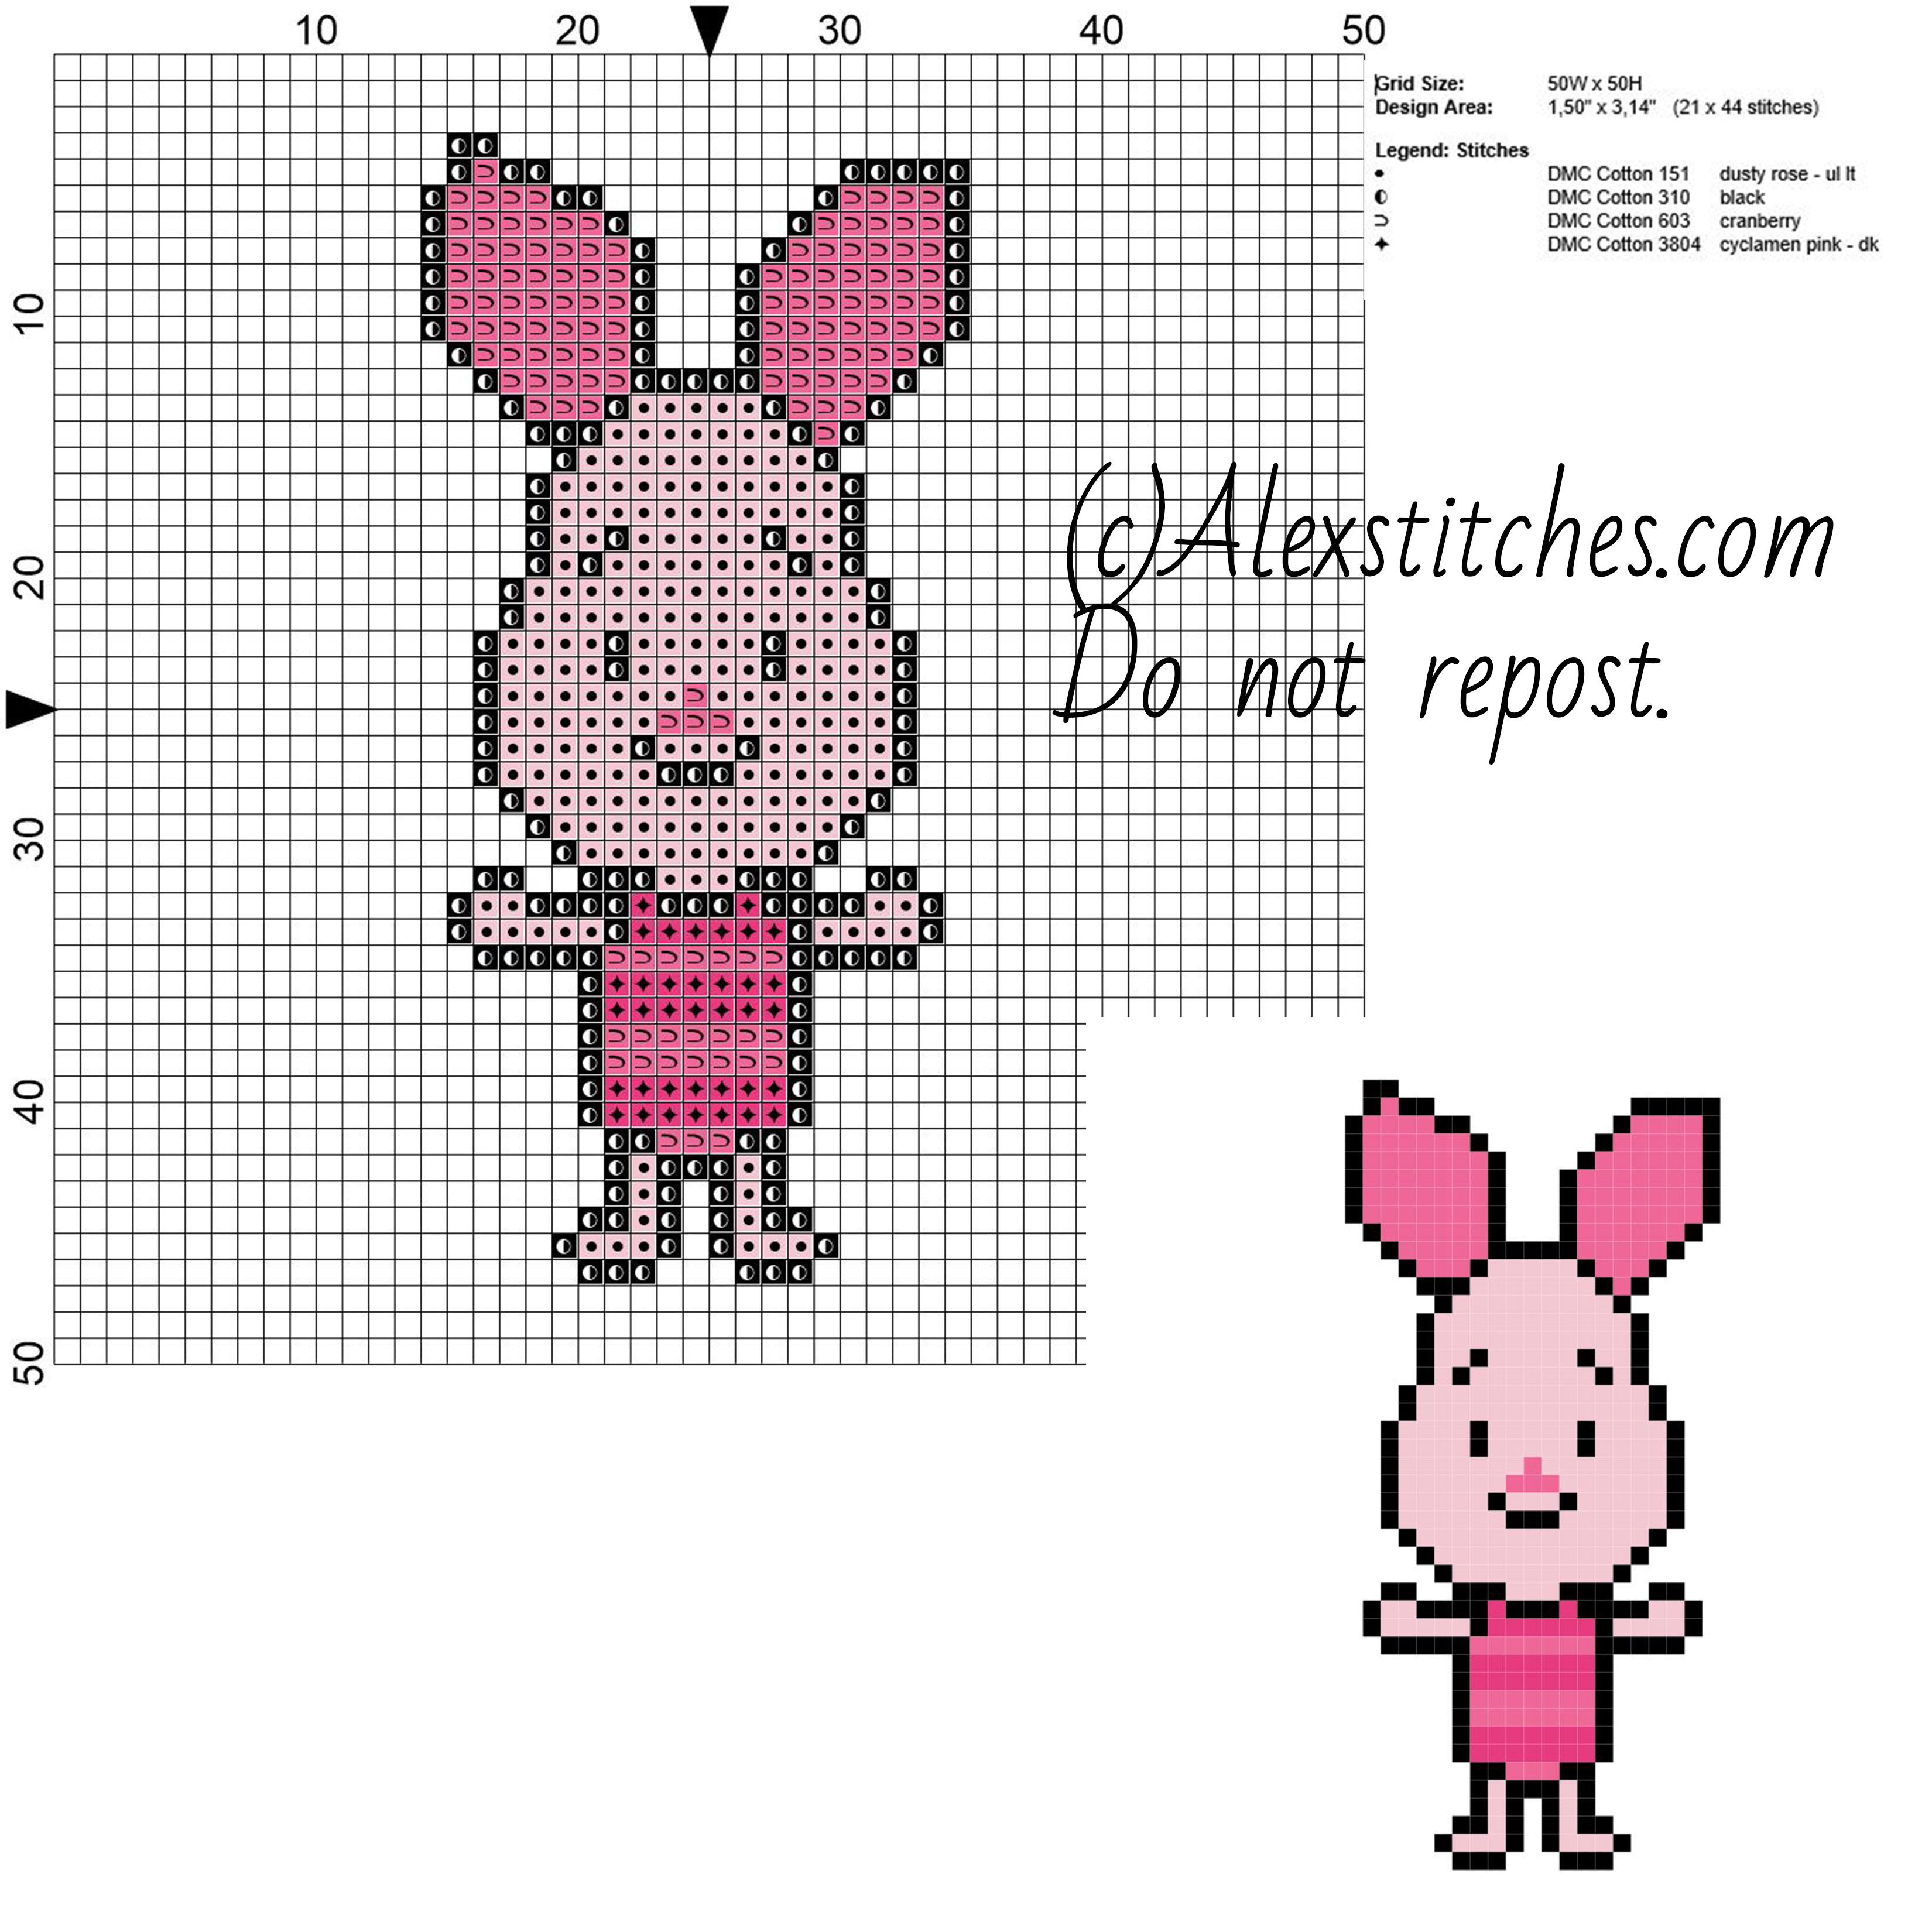 Piglet Disney Cuties free cross stitch pattern 50x50 4 colors